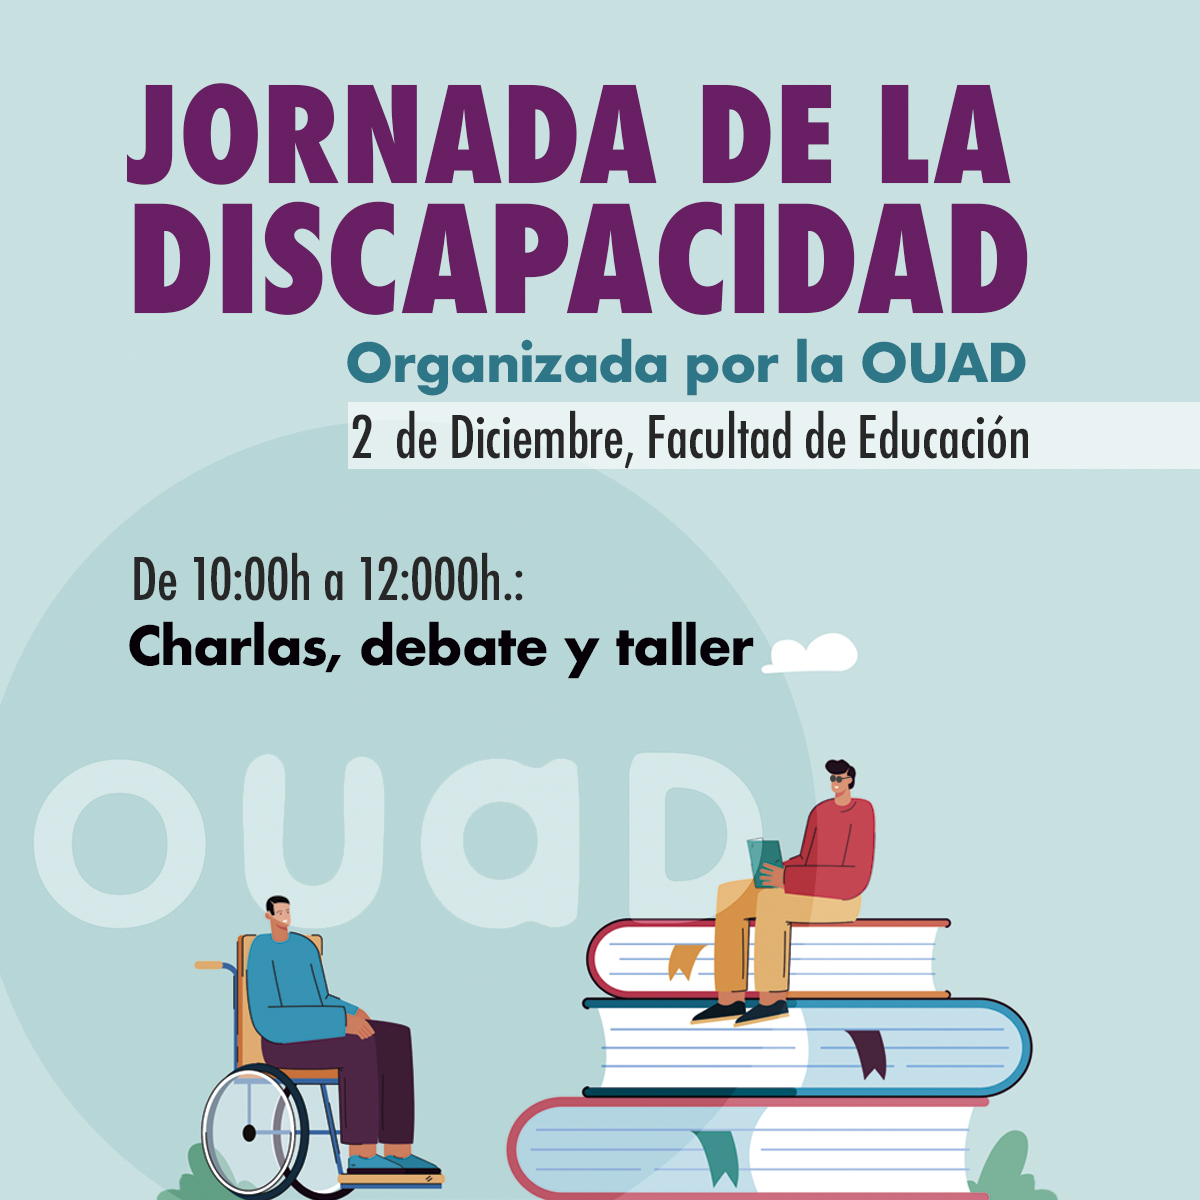 Imagen del cartel de la JORNADA DE LA DISCAPACIDAD